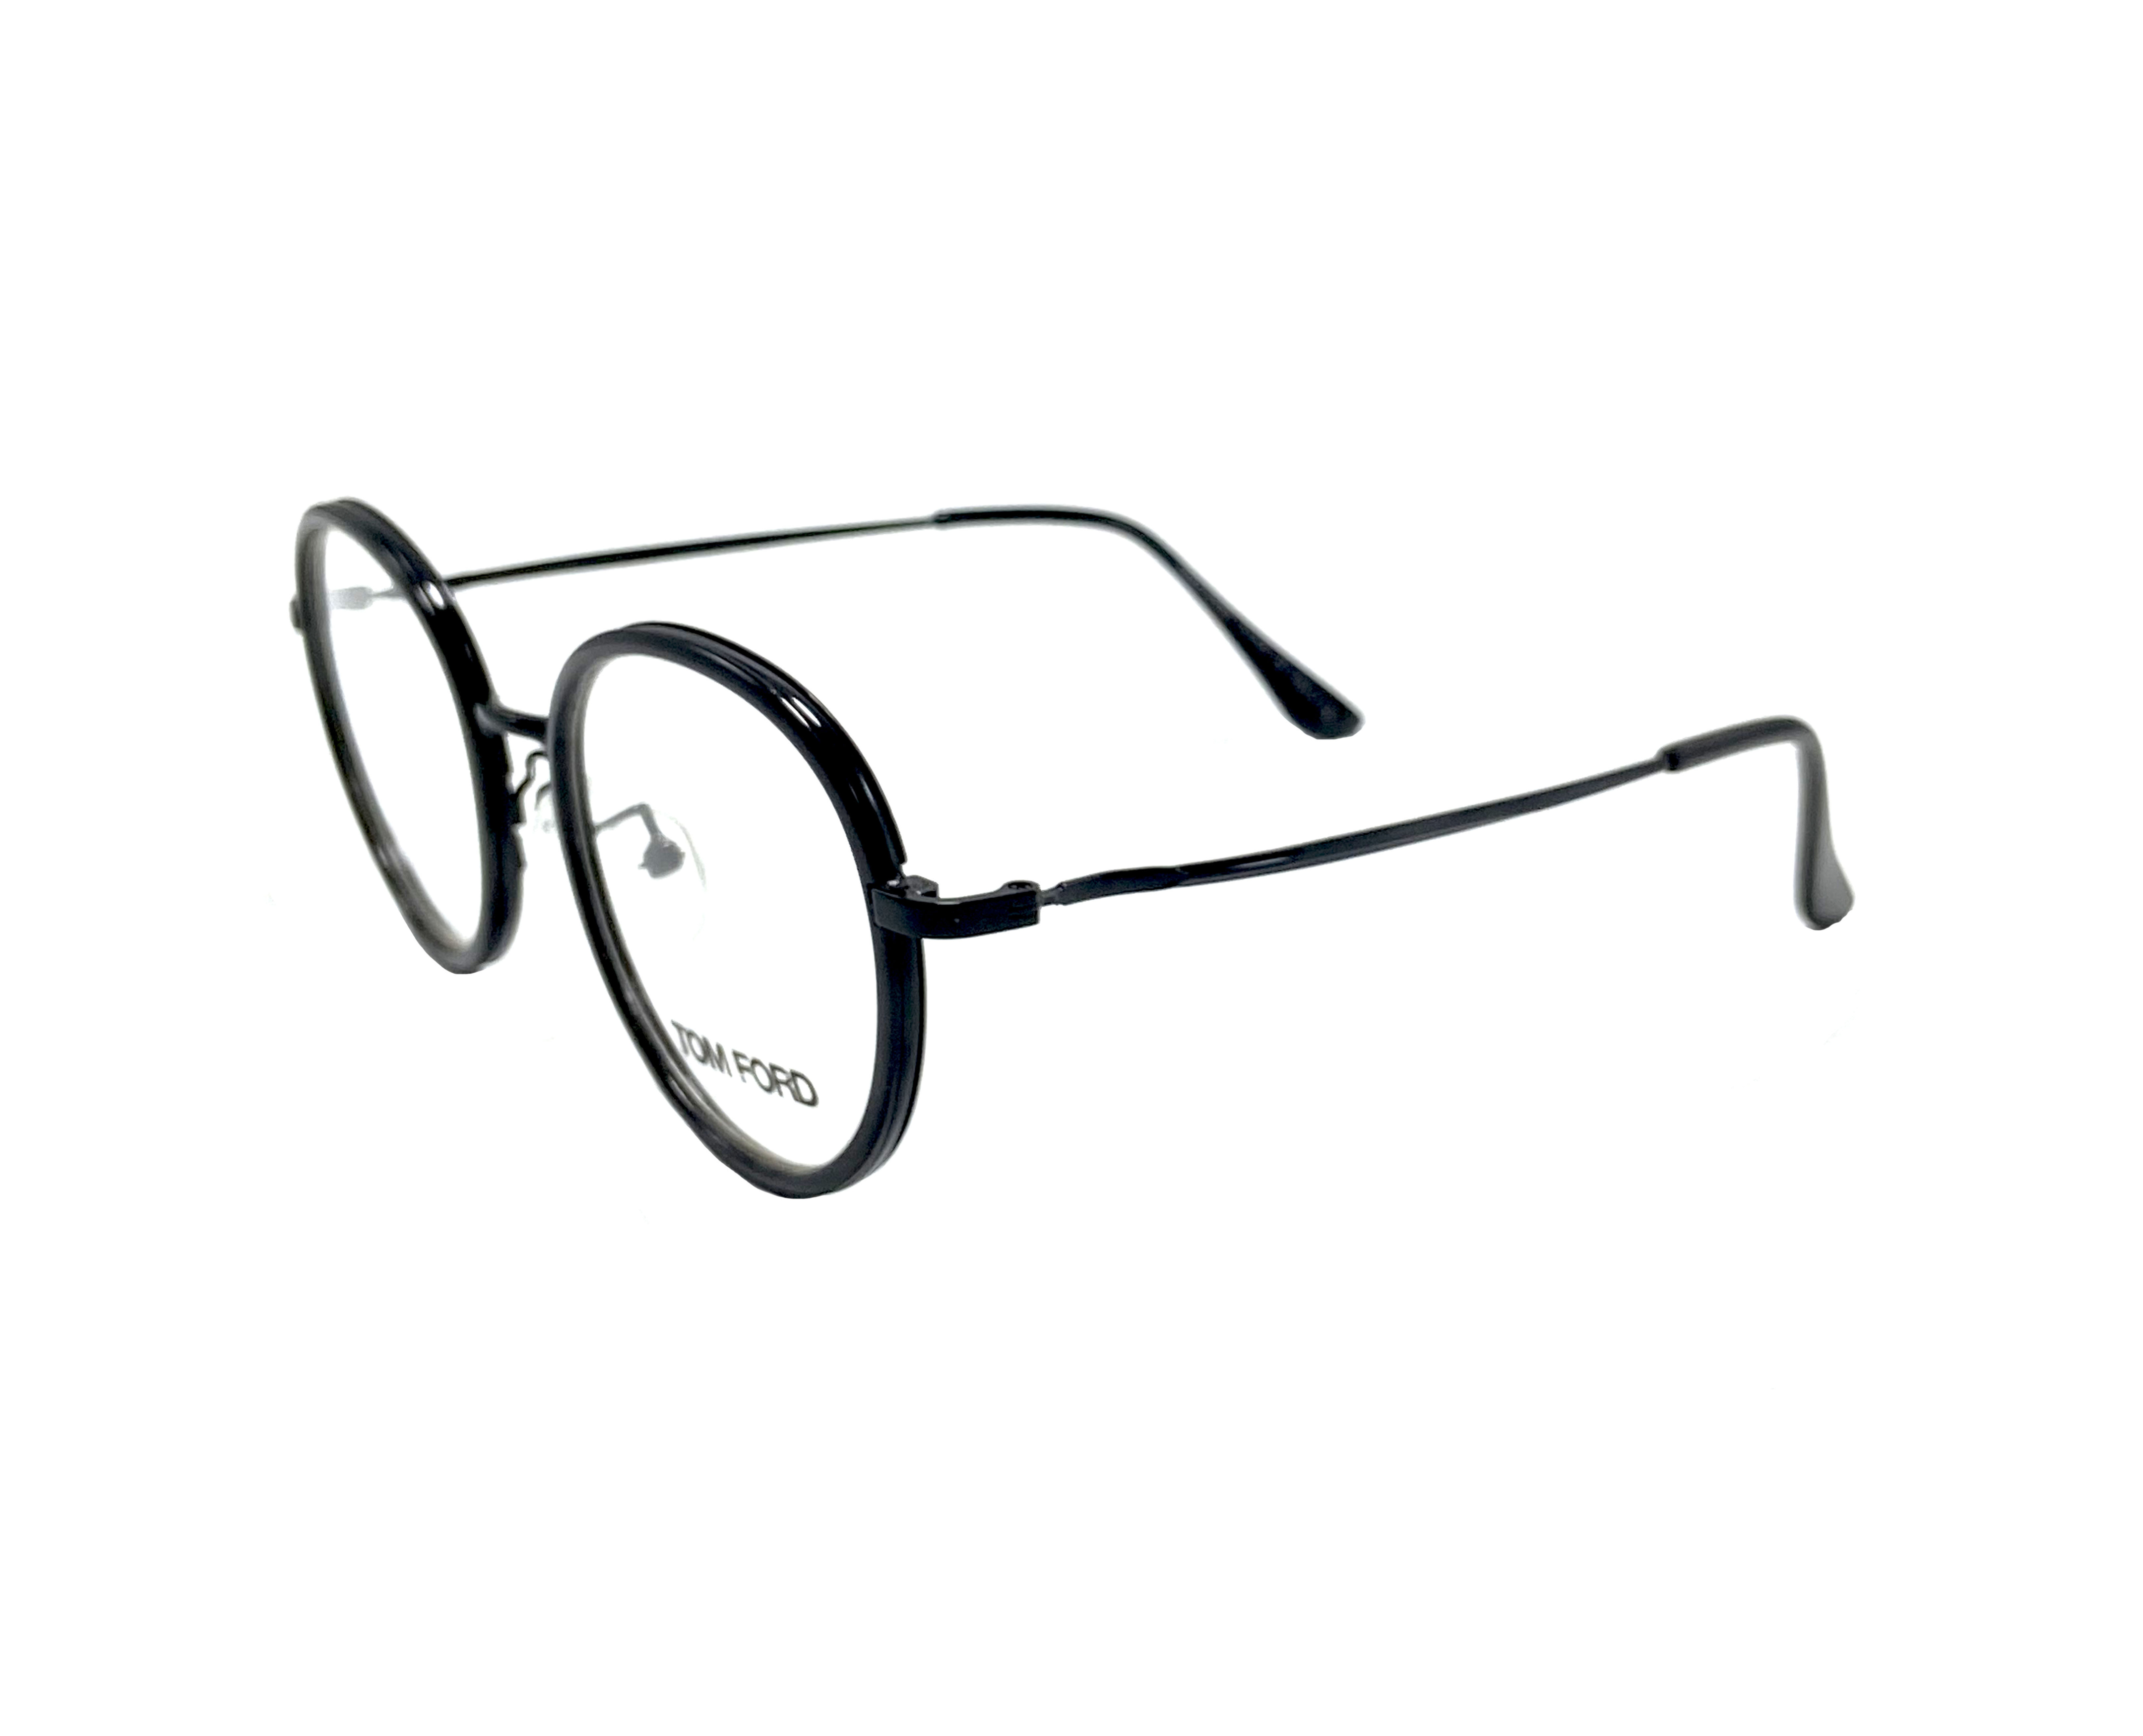 NS Classic - 2625 - Black - Eyeglasses